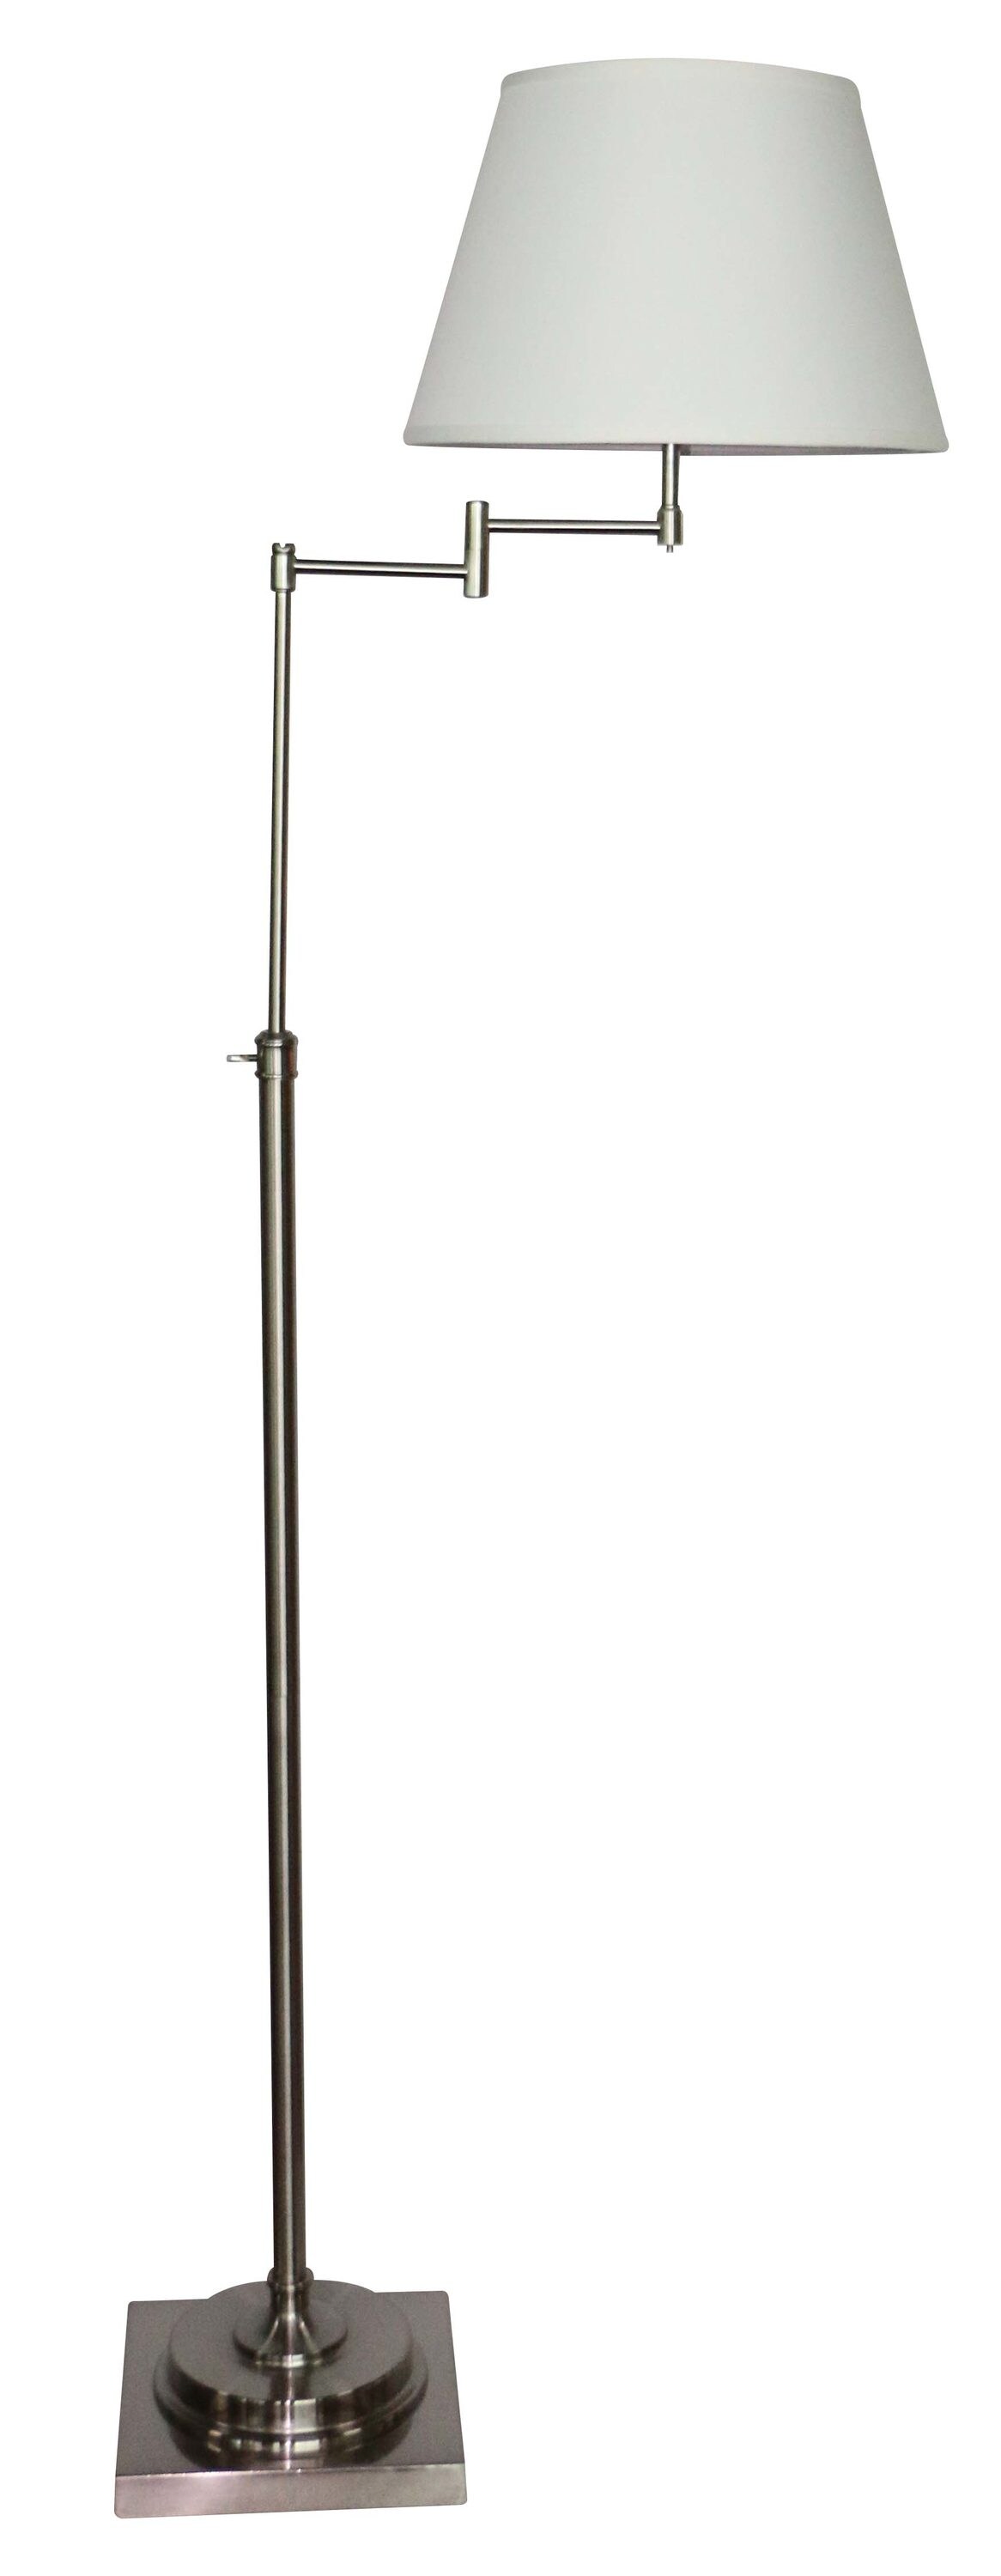 Brushed Nickel Swing Arm Floor Lamp